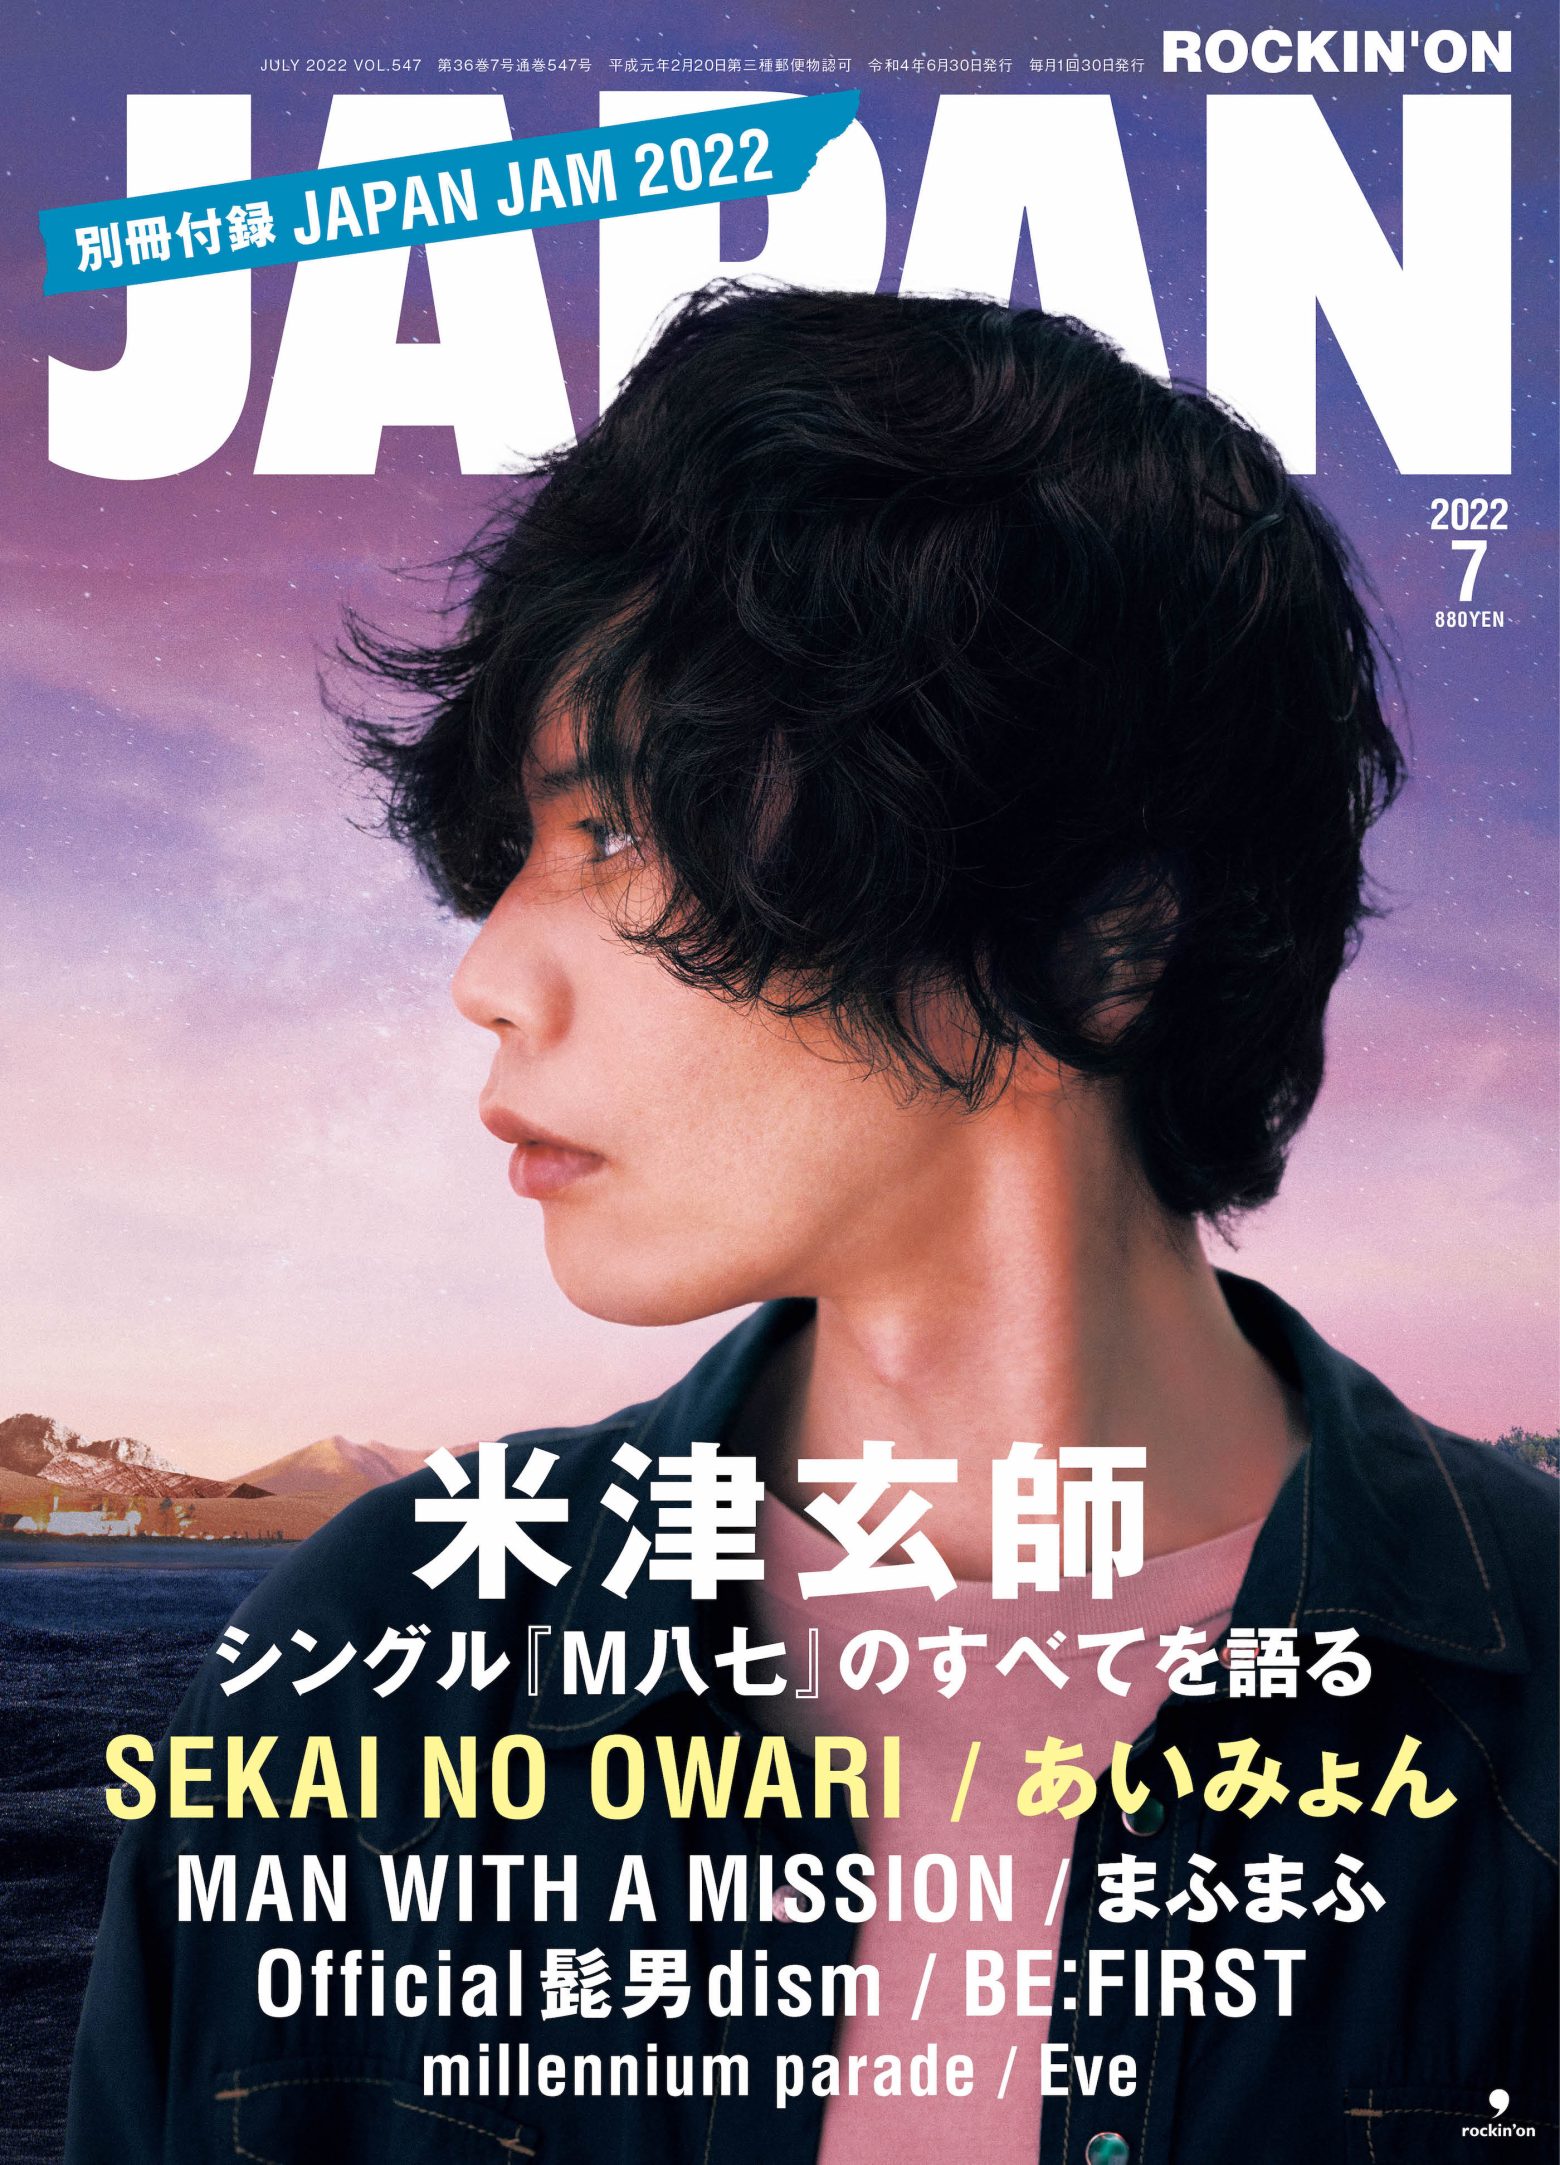 米津玄師、『ROCKIN'ON JAPAN』7月号の表紙巻頭に登場 | Musicman